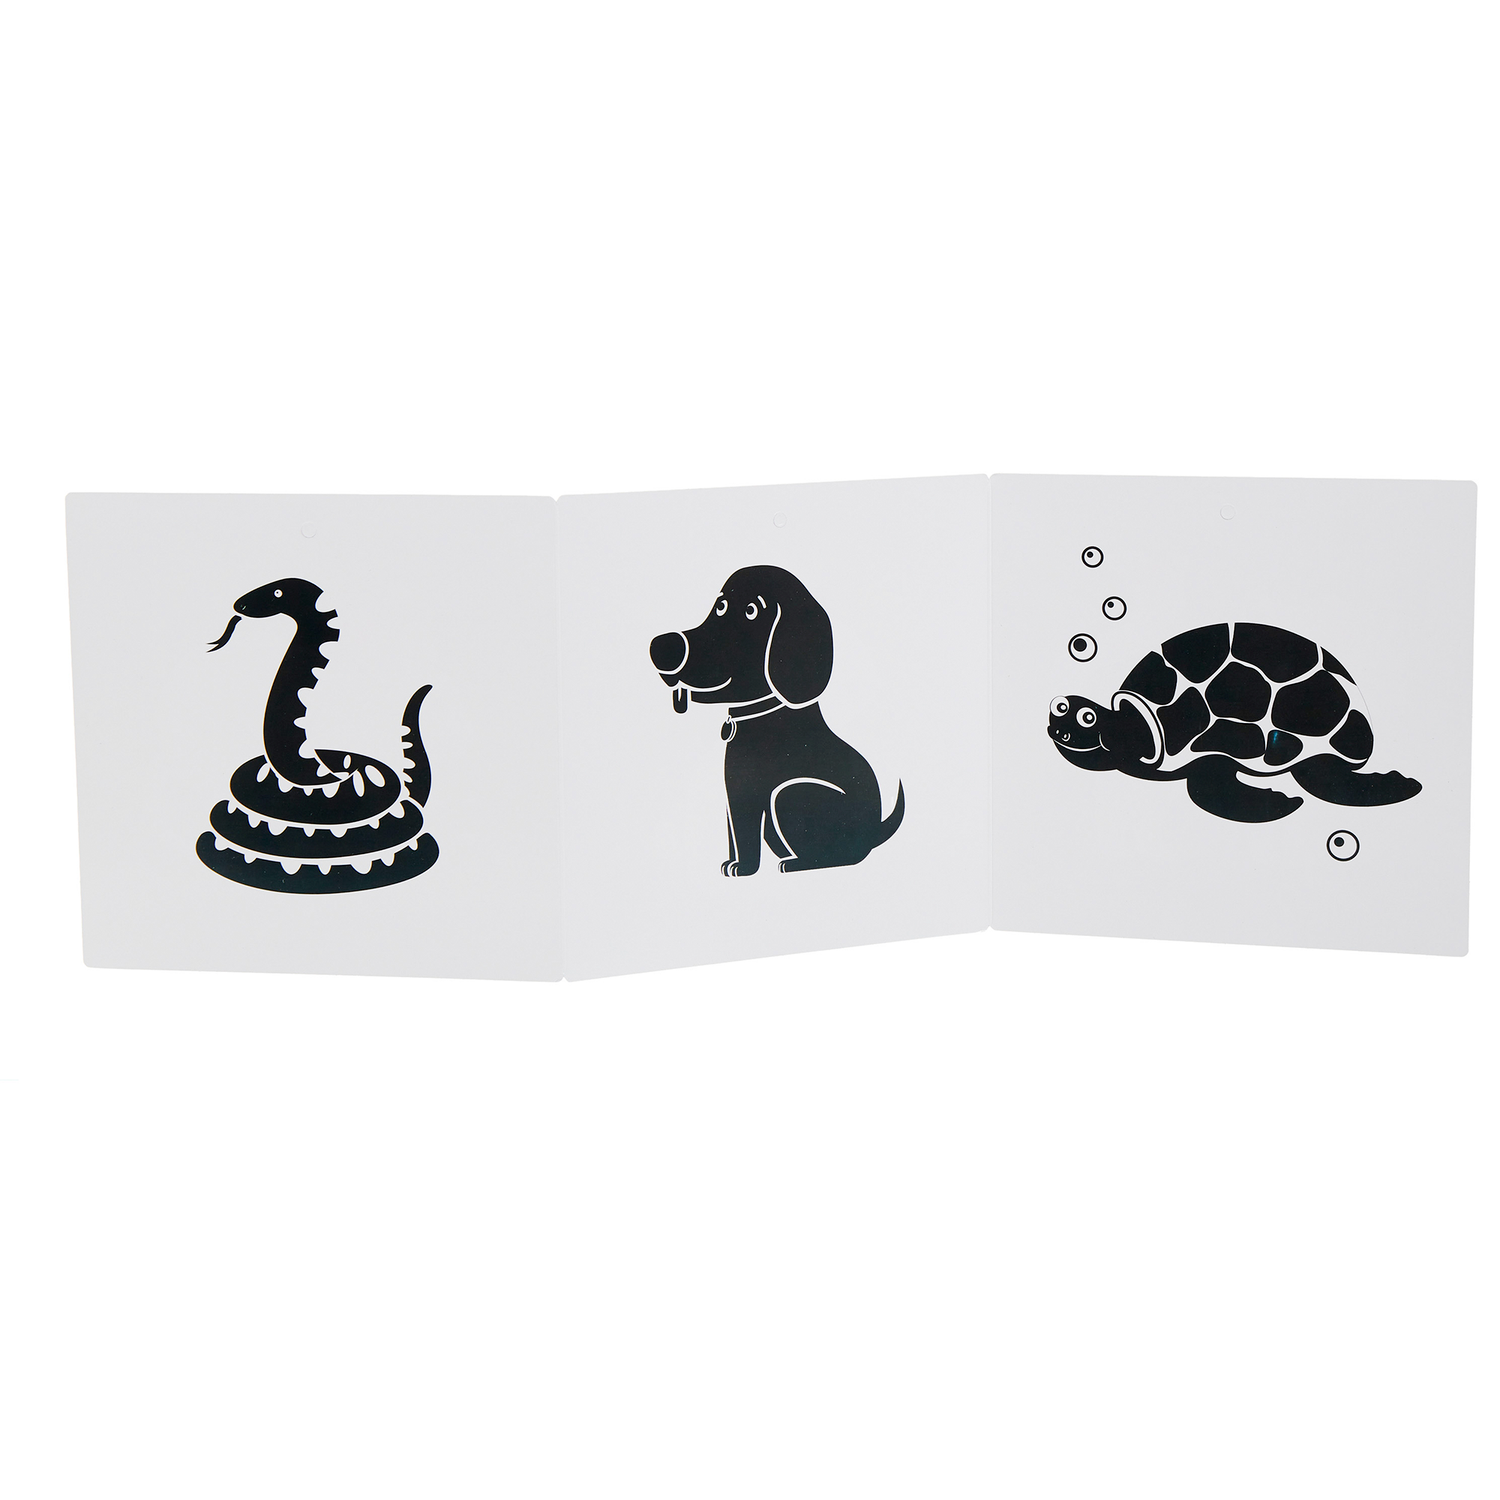 Черно белые и цветные картинки КУЗЯ ТУТ Набор из шести книжек - гармошек Карточки для новорожденных - фото 19